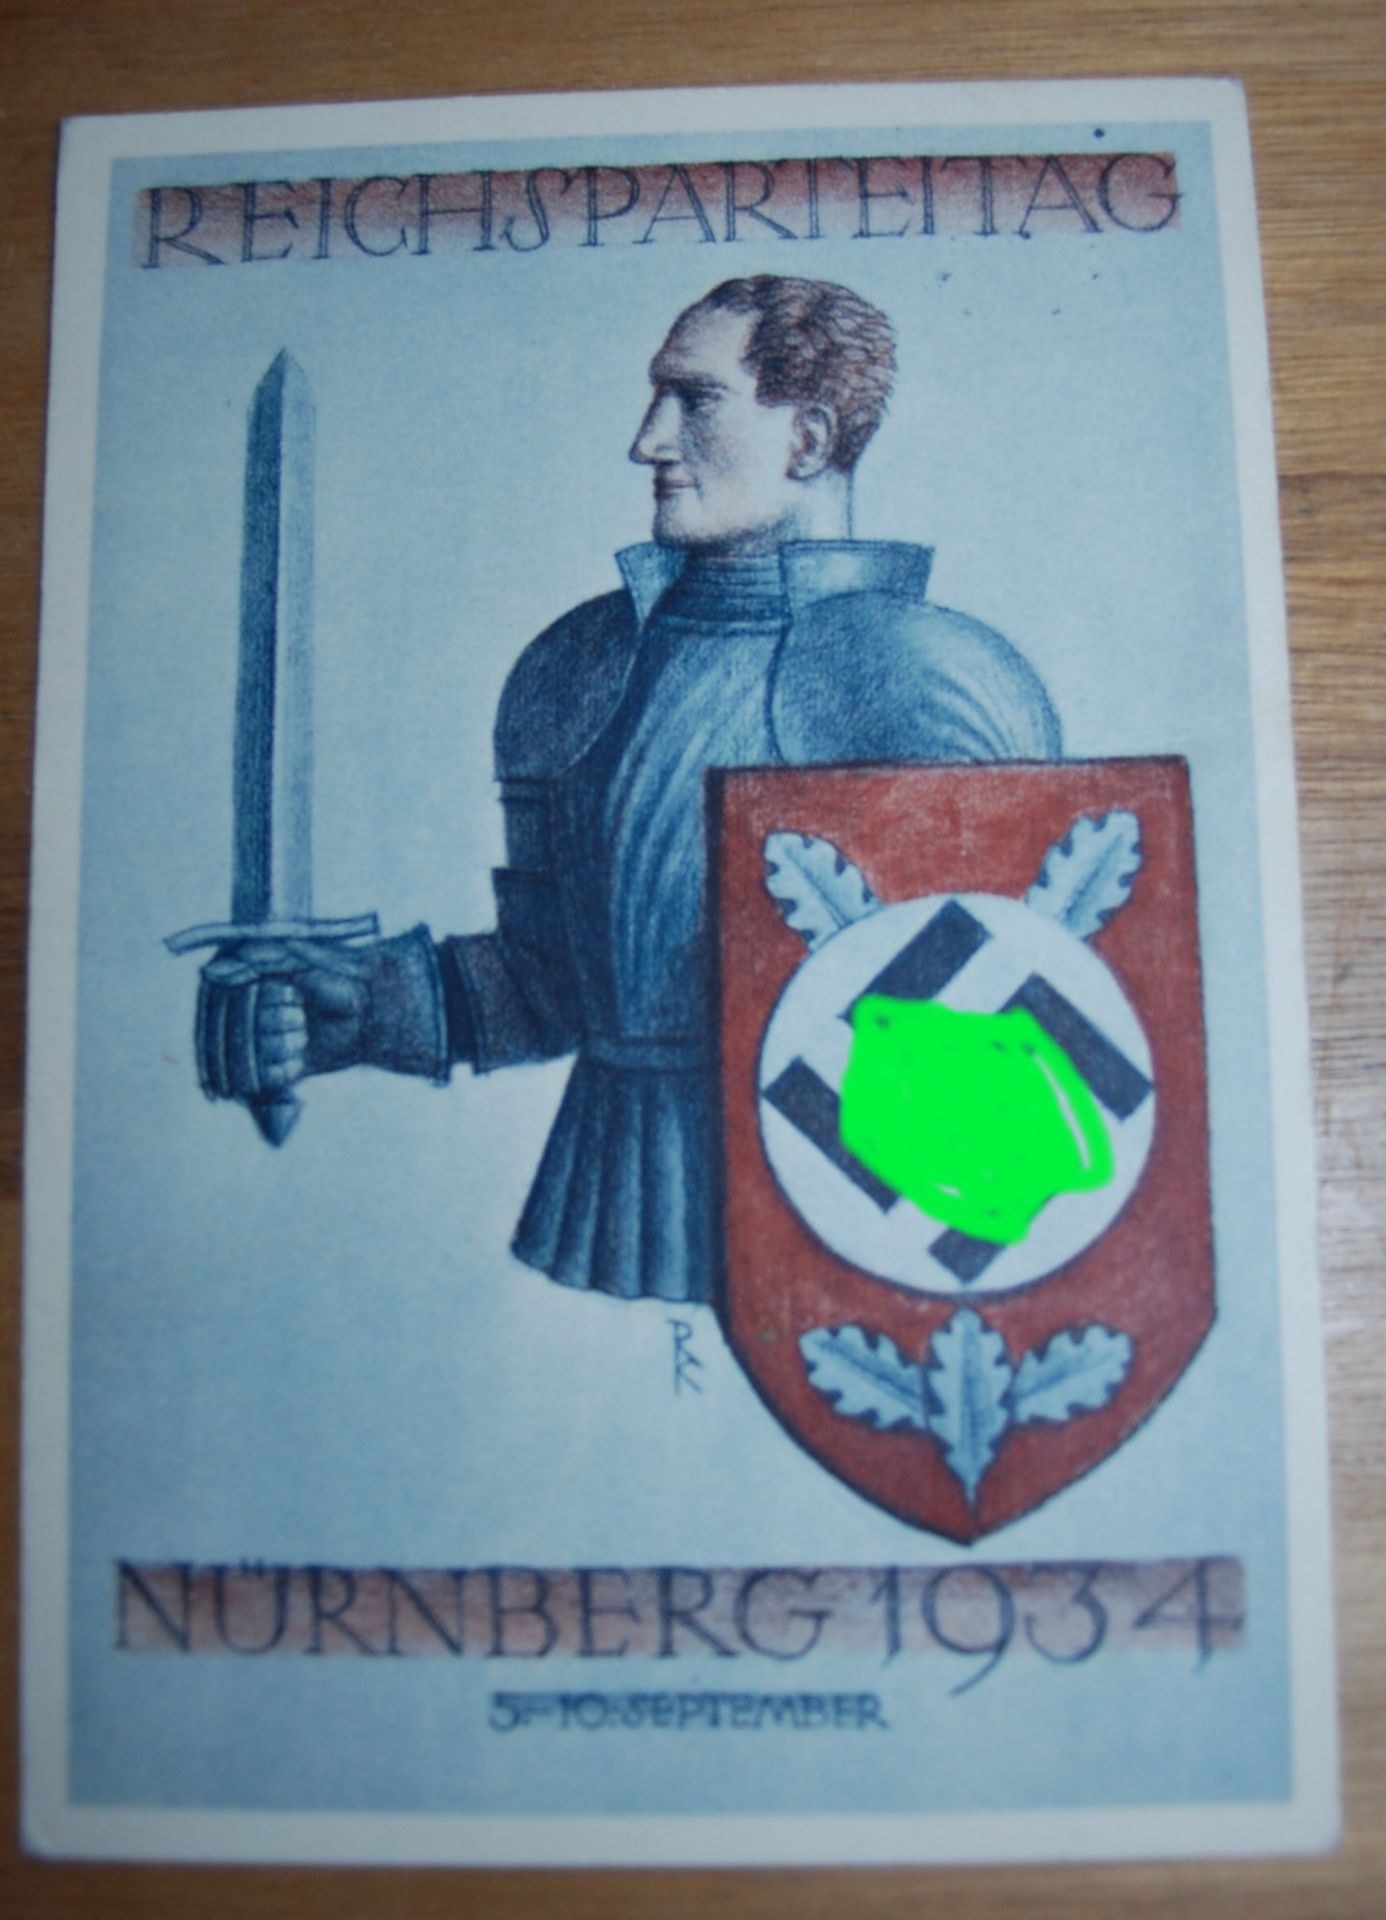 Festpostkarte Nürnberger Parteitag 1934, gelaufen, Verlag Franz Ehe<